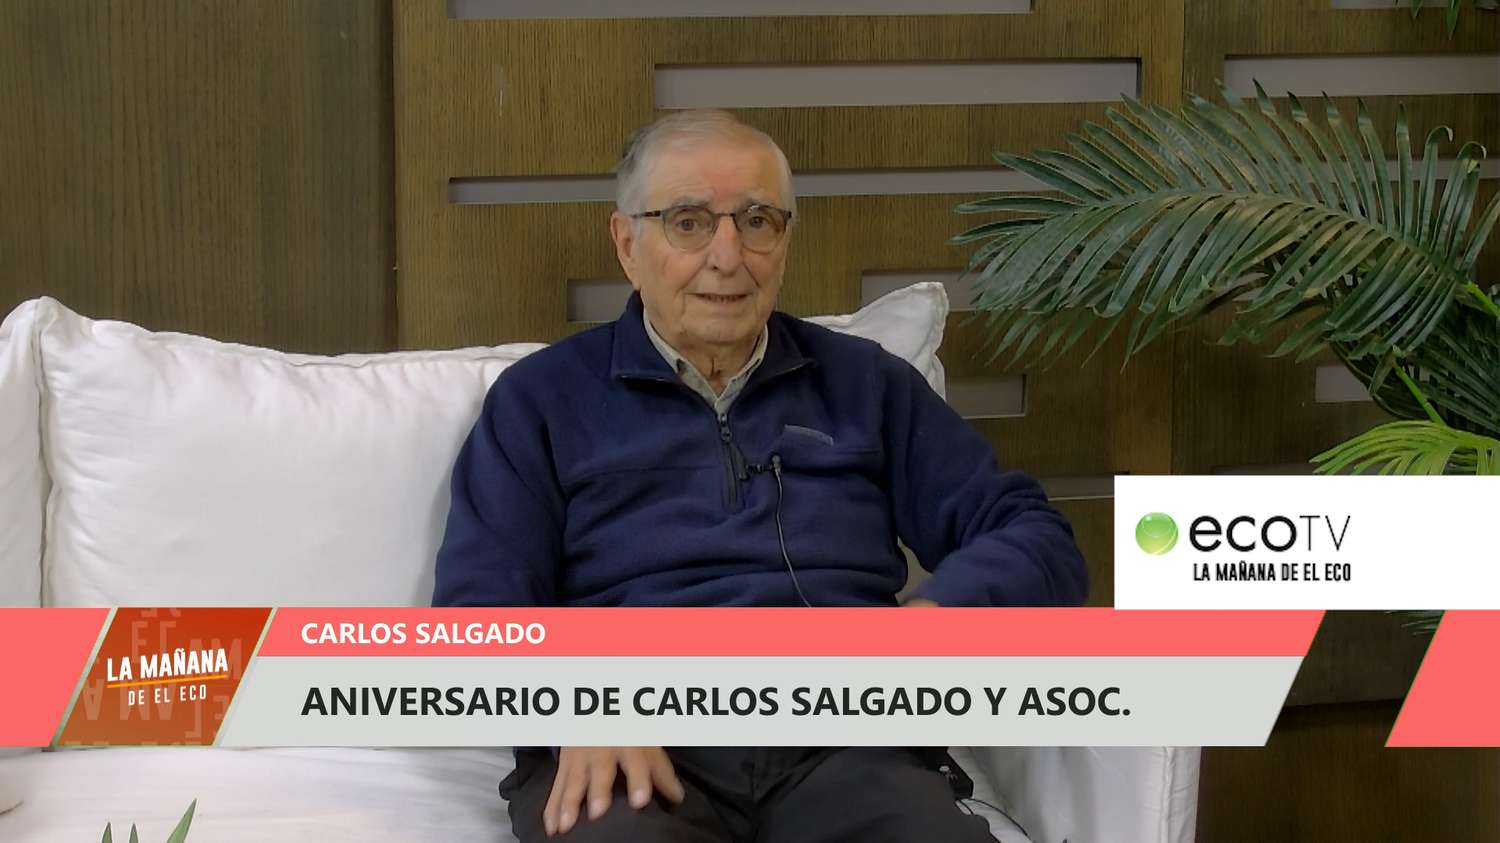 Aniversario de Carlos Salgado y Asoc